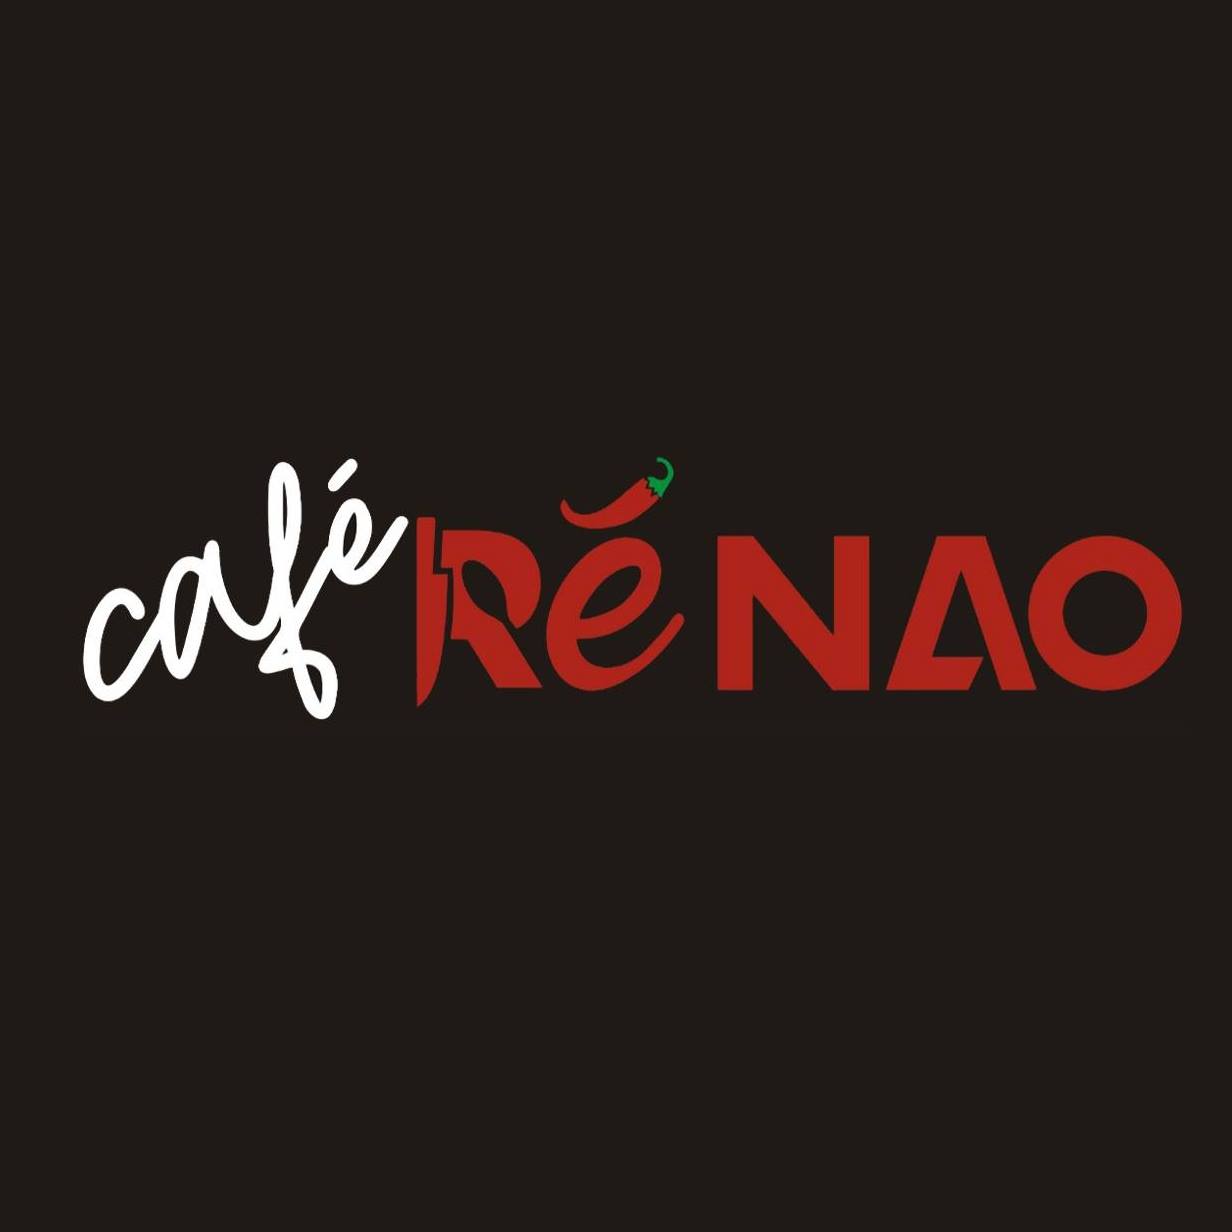 Cafe Re Nao Logo